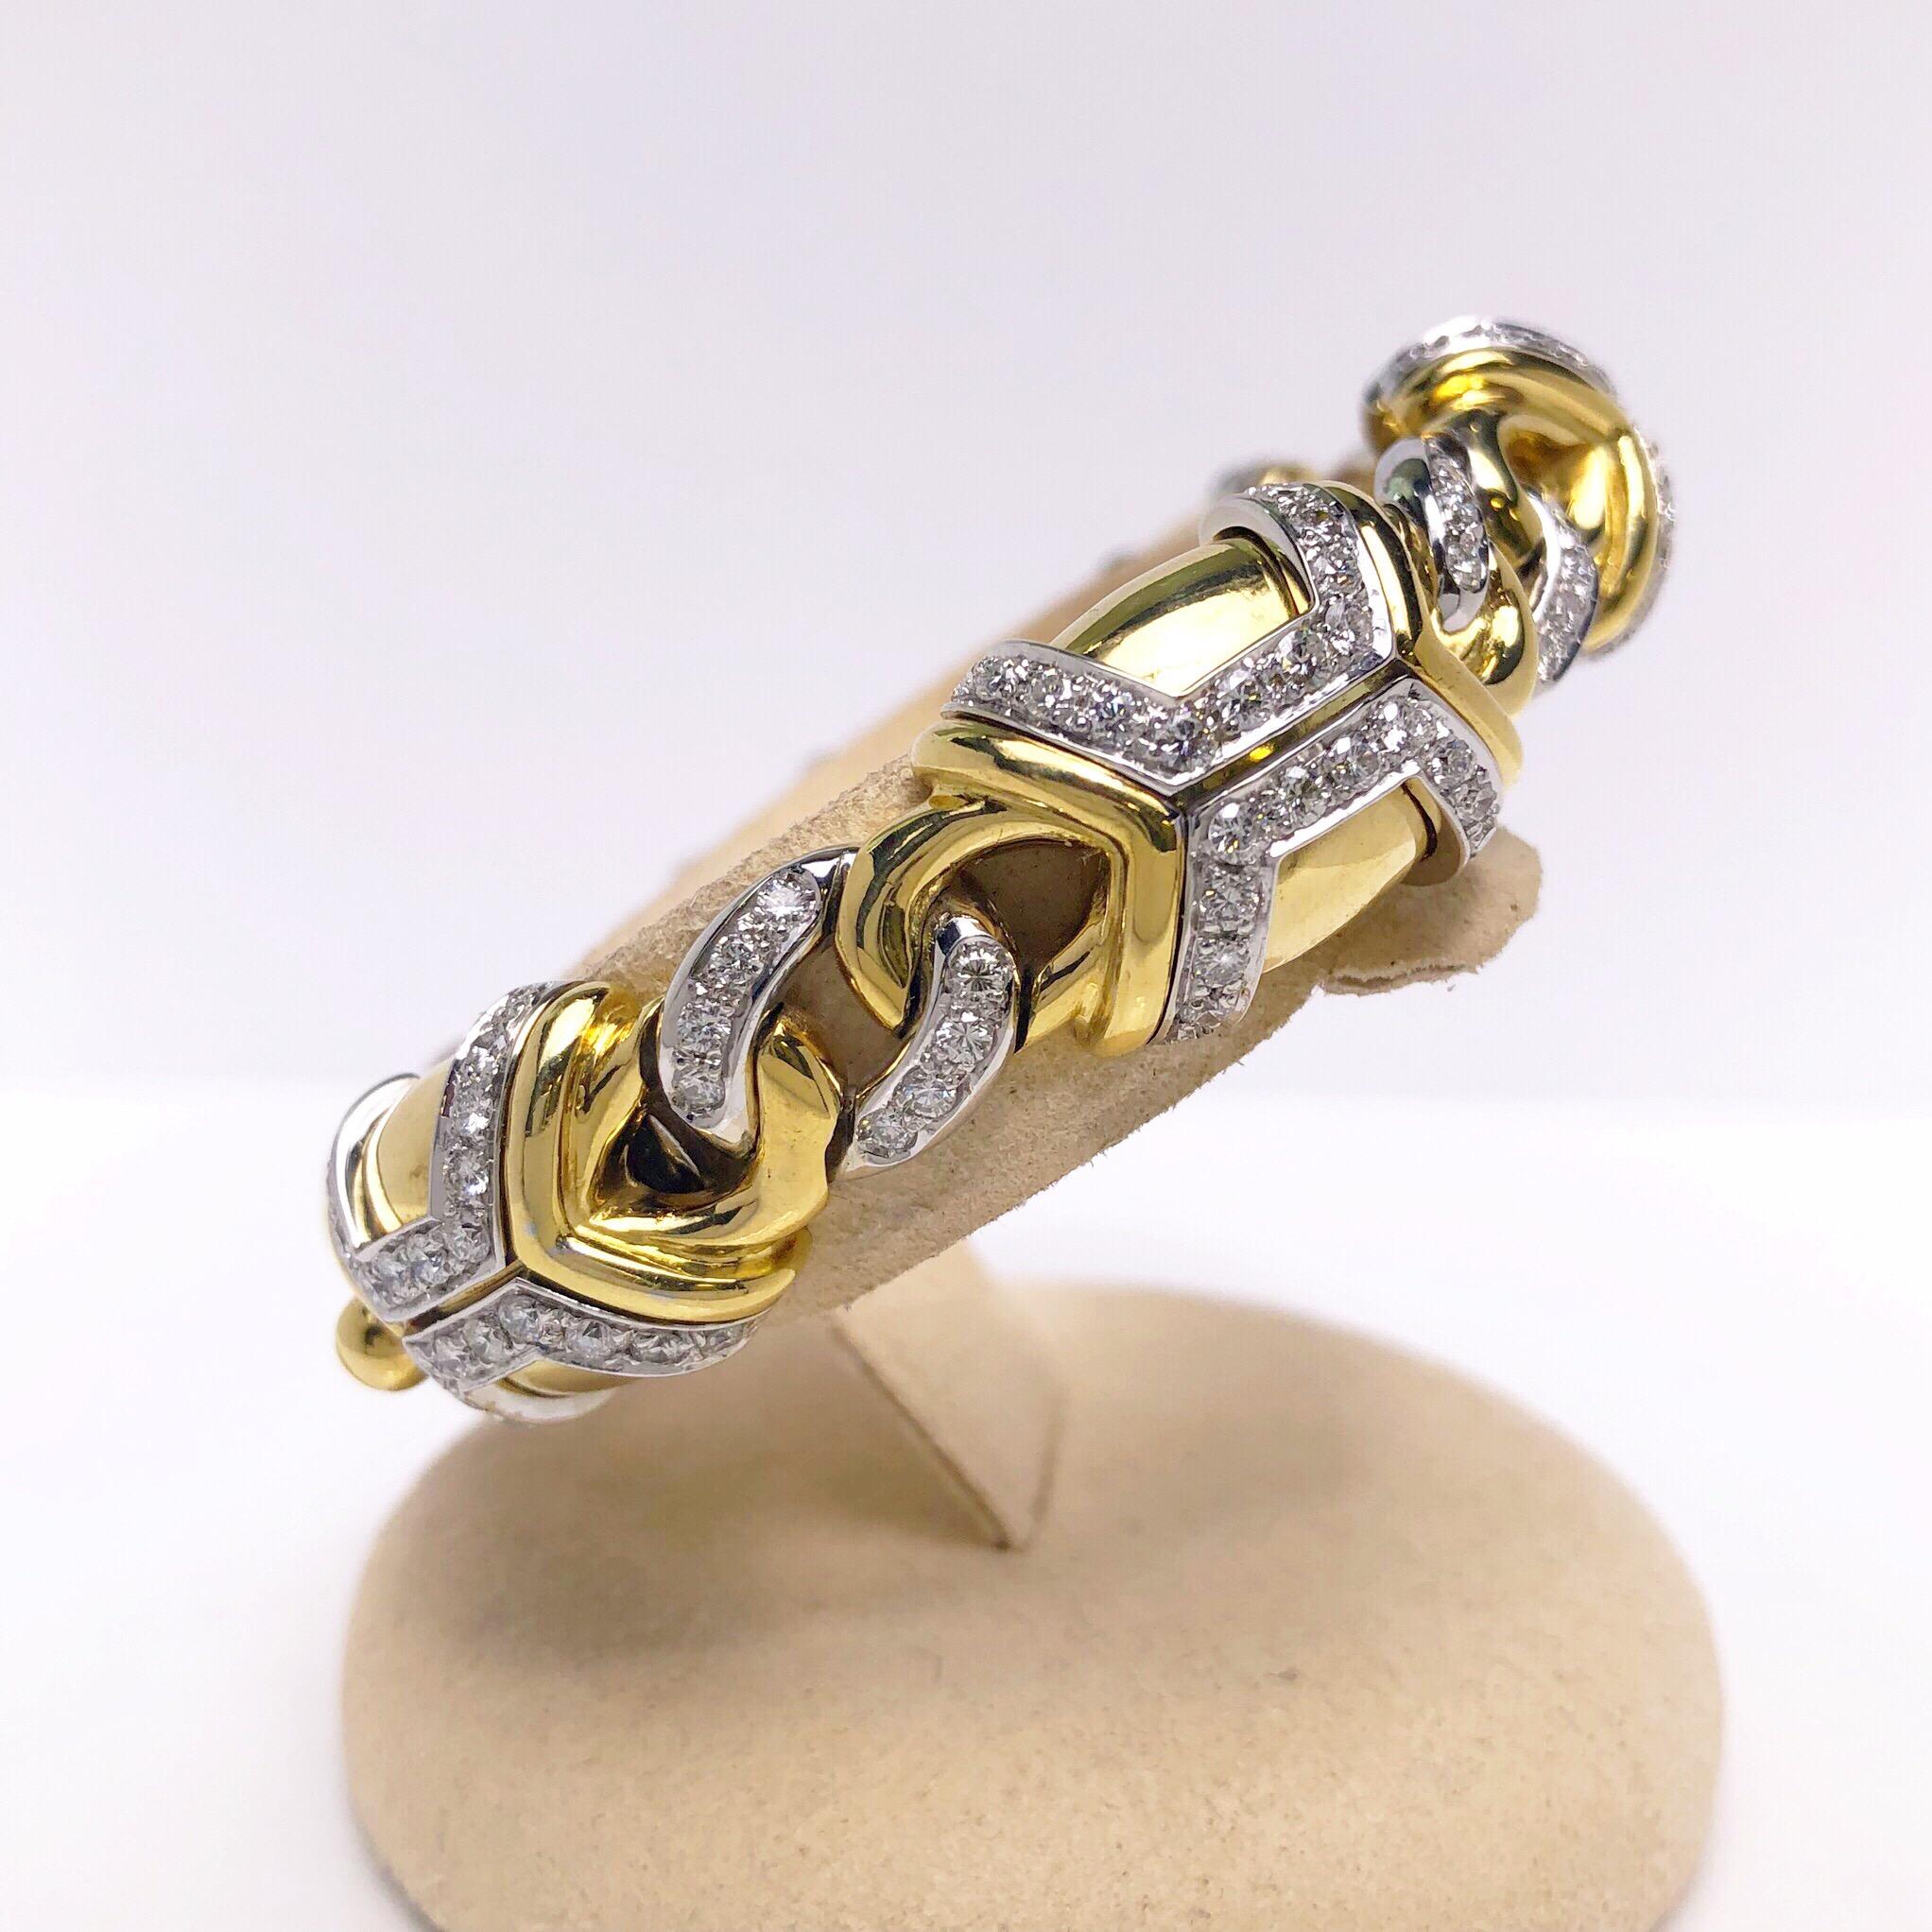 Fabriqué en Italie par Nino Verita, six sections ovales en or jaune 18 carats poli à la perfection créent ce magnifique bracelet épais. Chaque section est rehaussée de diamants ronds et brillants sertis en or blanc 18 carats et reliés par un lien en